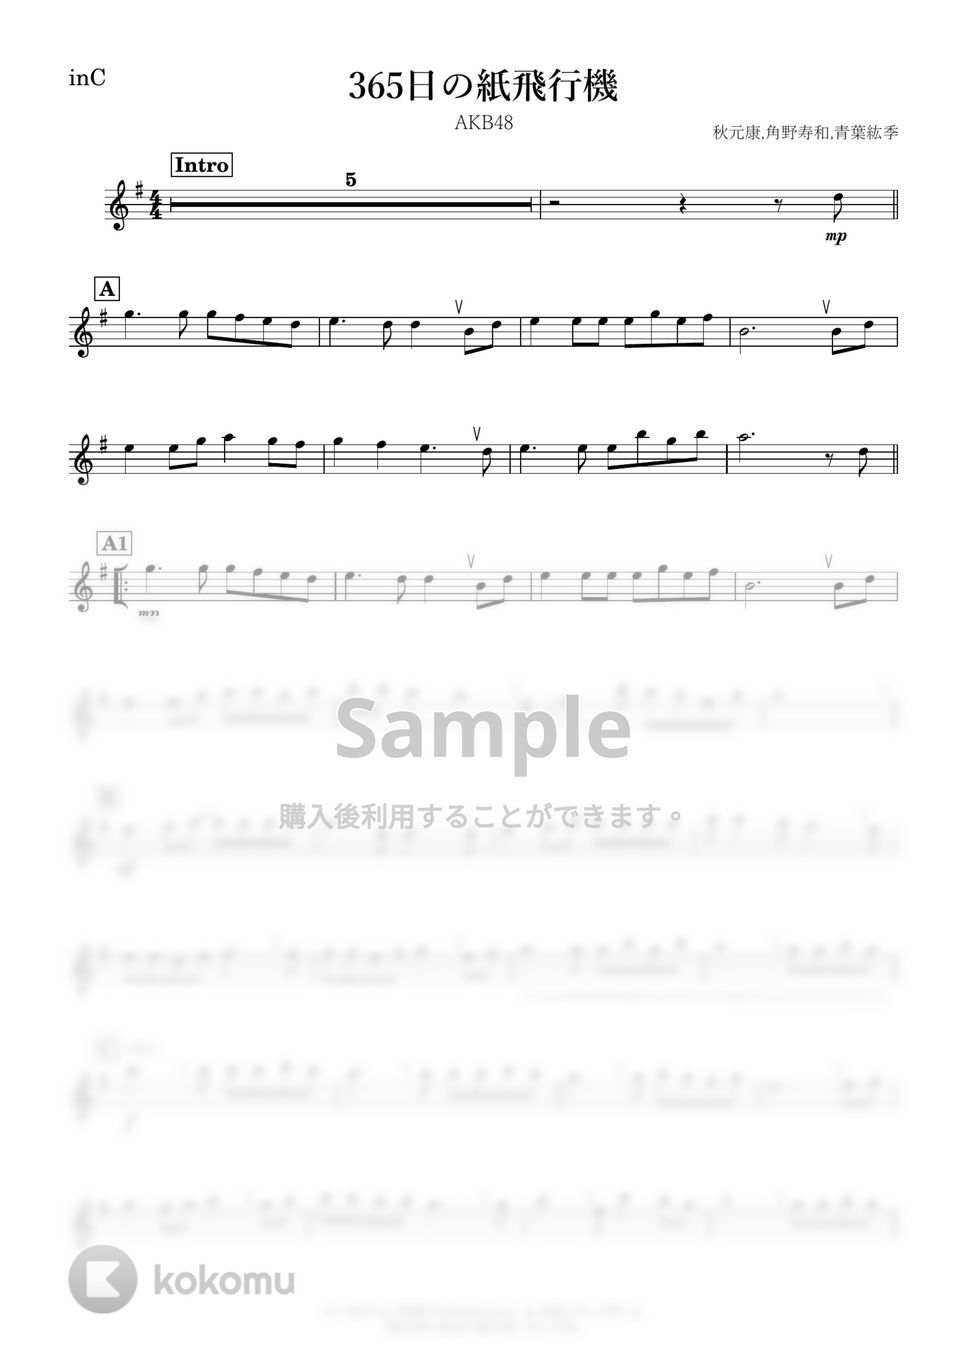 AKB48 - 365日の紙飛行機 (C) by kanamusic